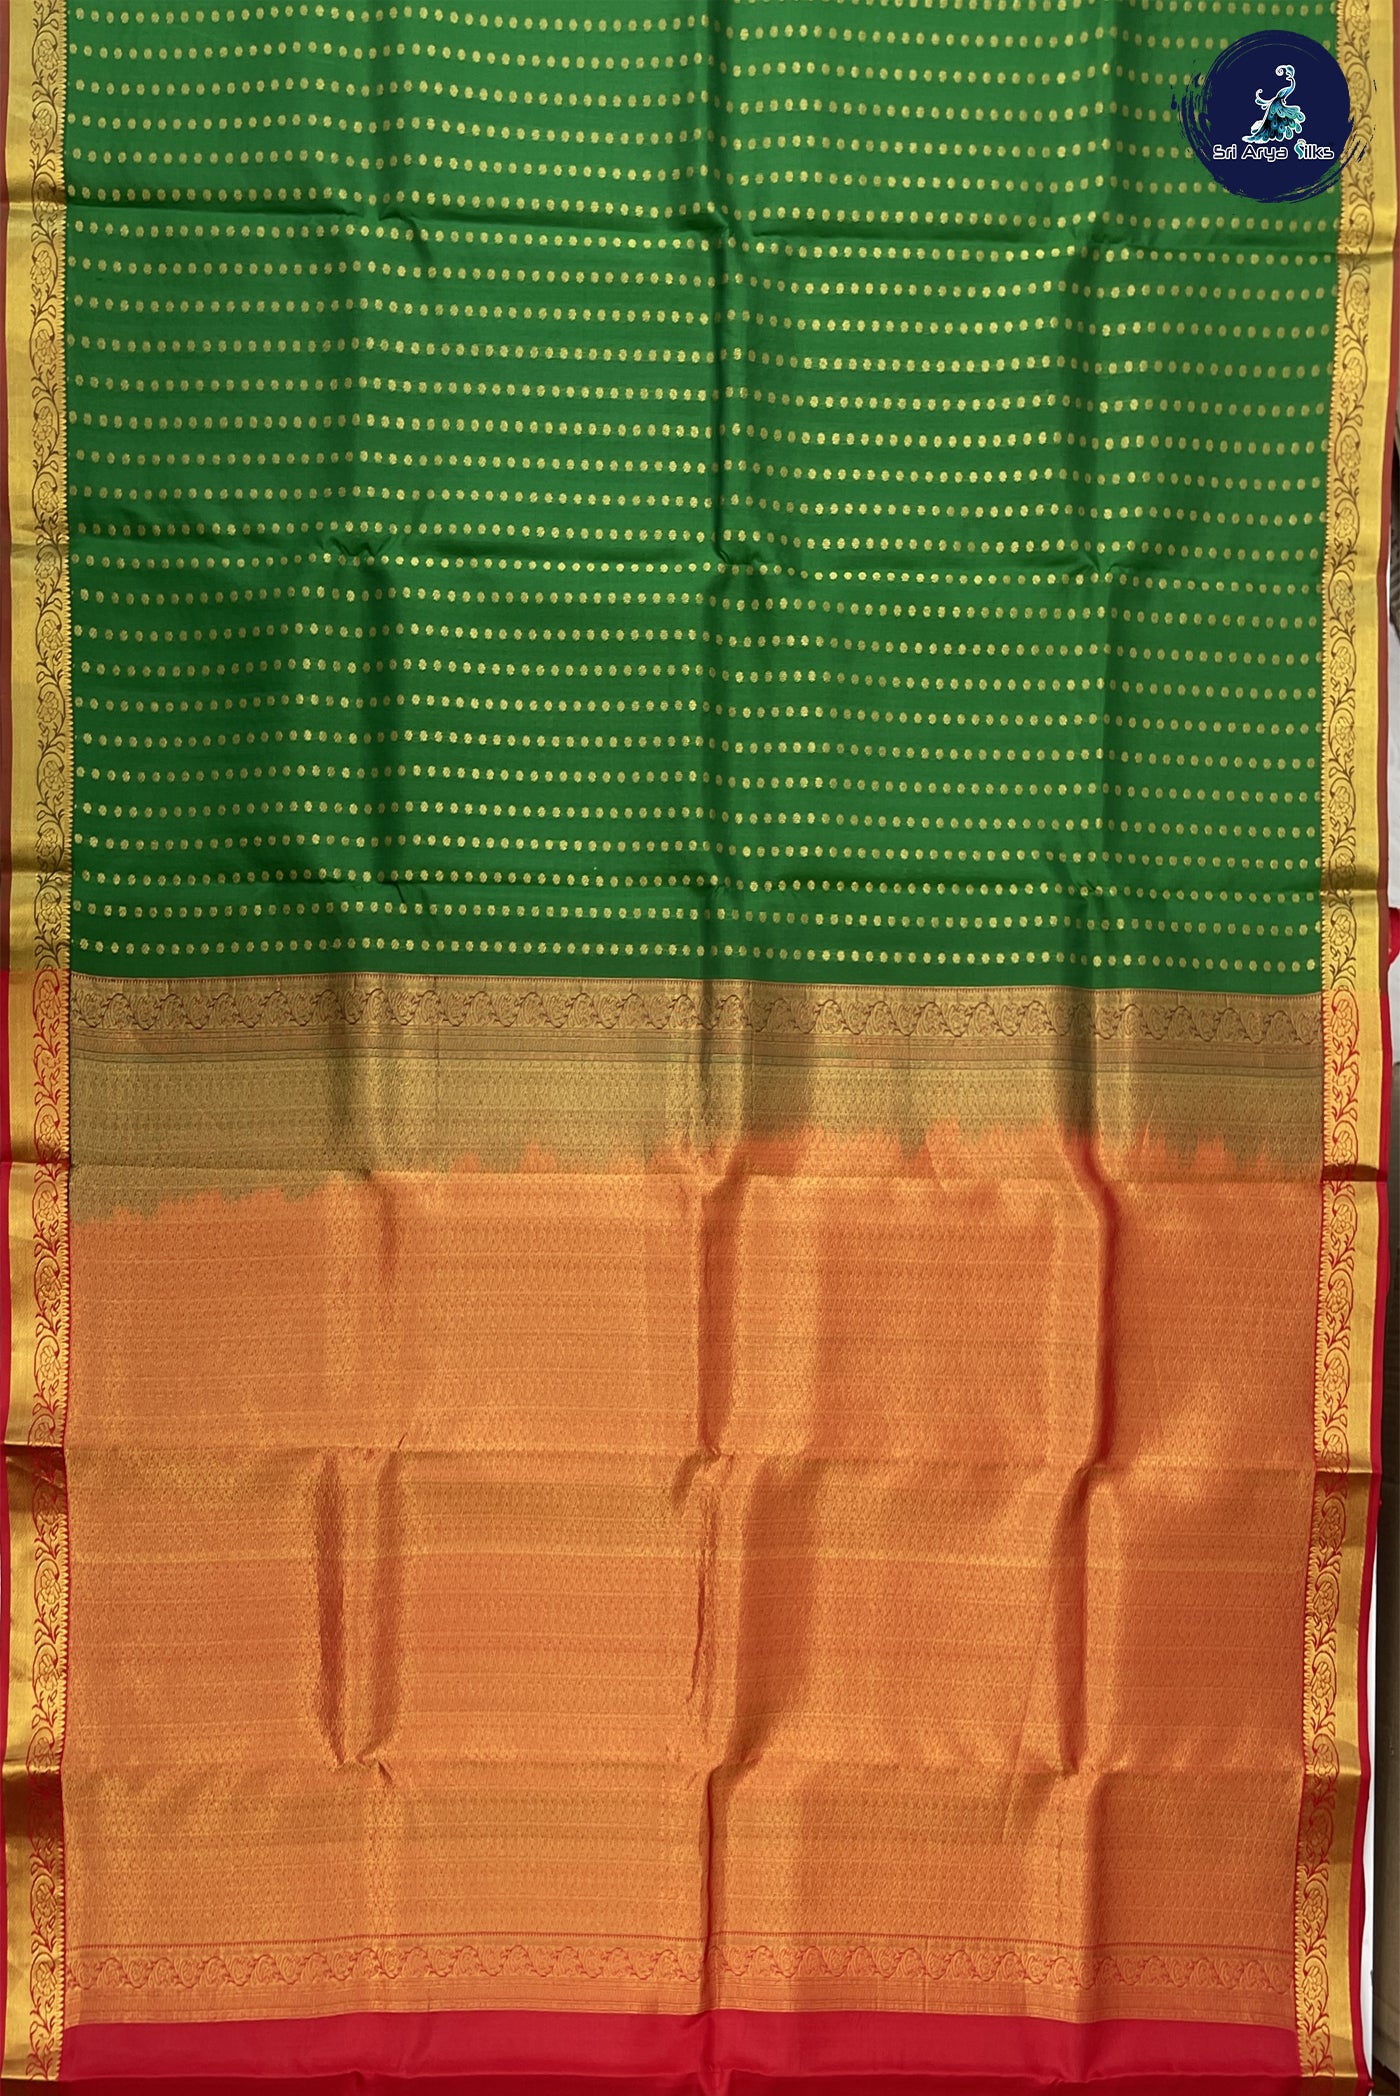 Green Bridal Silk Saree With Zari Buttas Pattern